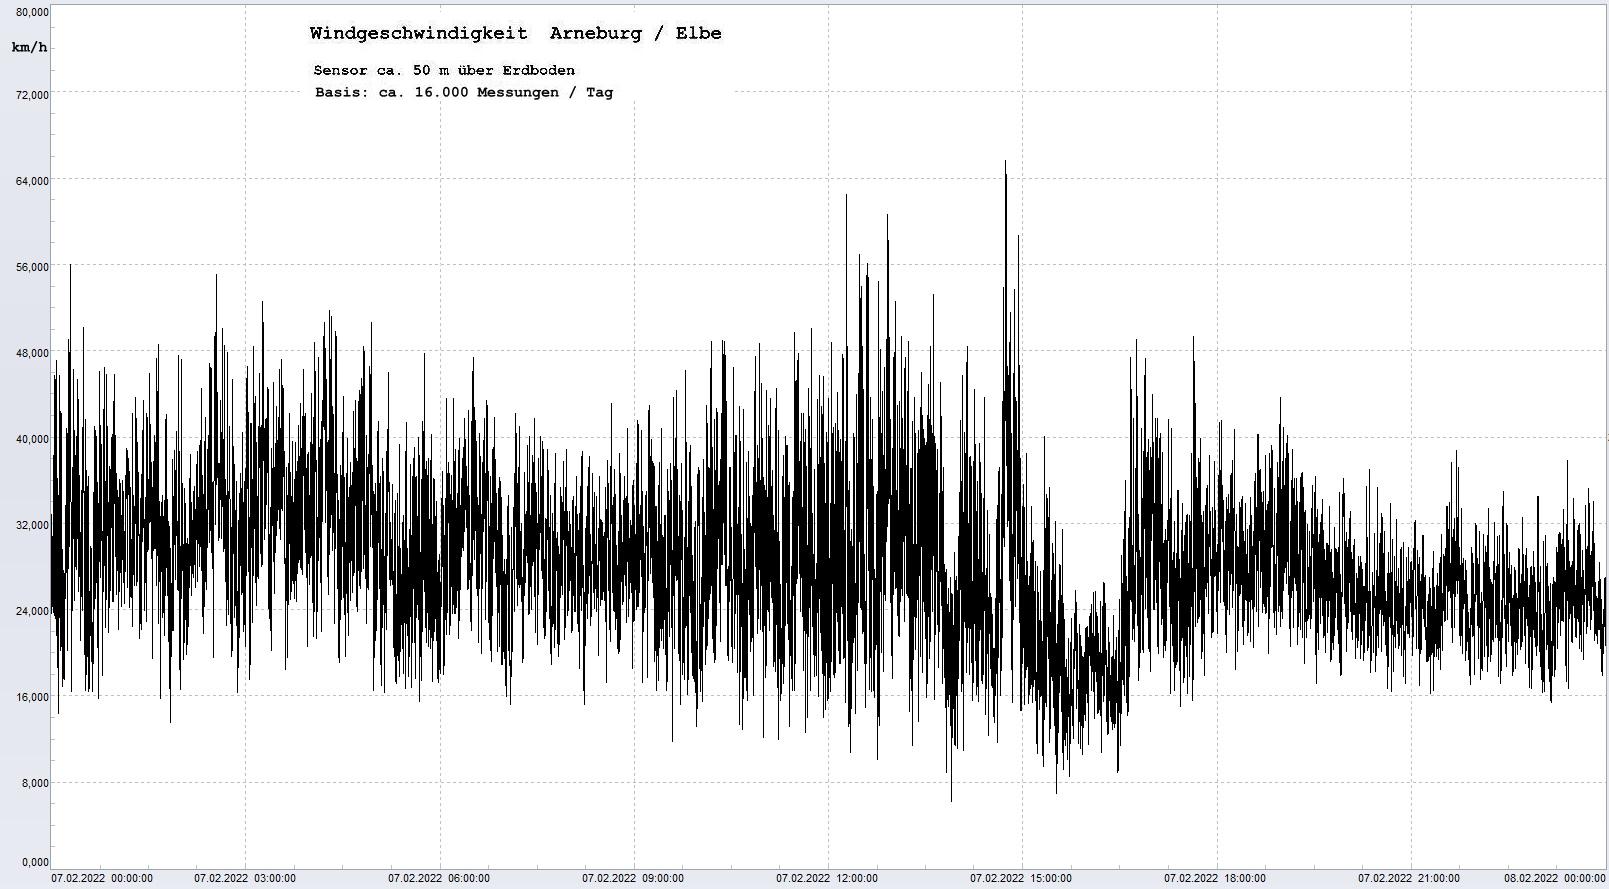 Arneburg Tages-Diagramm Winddaten, 07.02.2022
  Diagramm, Sensor auf Gebude, ca. 50 m ber Erdboden, Basis: 5s-Aufzeichnung